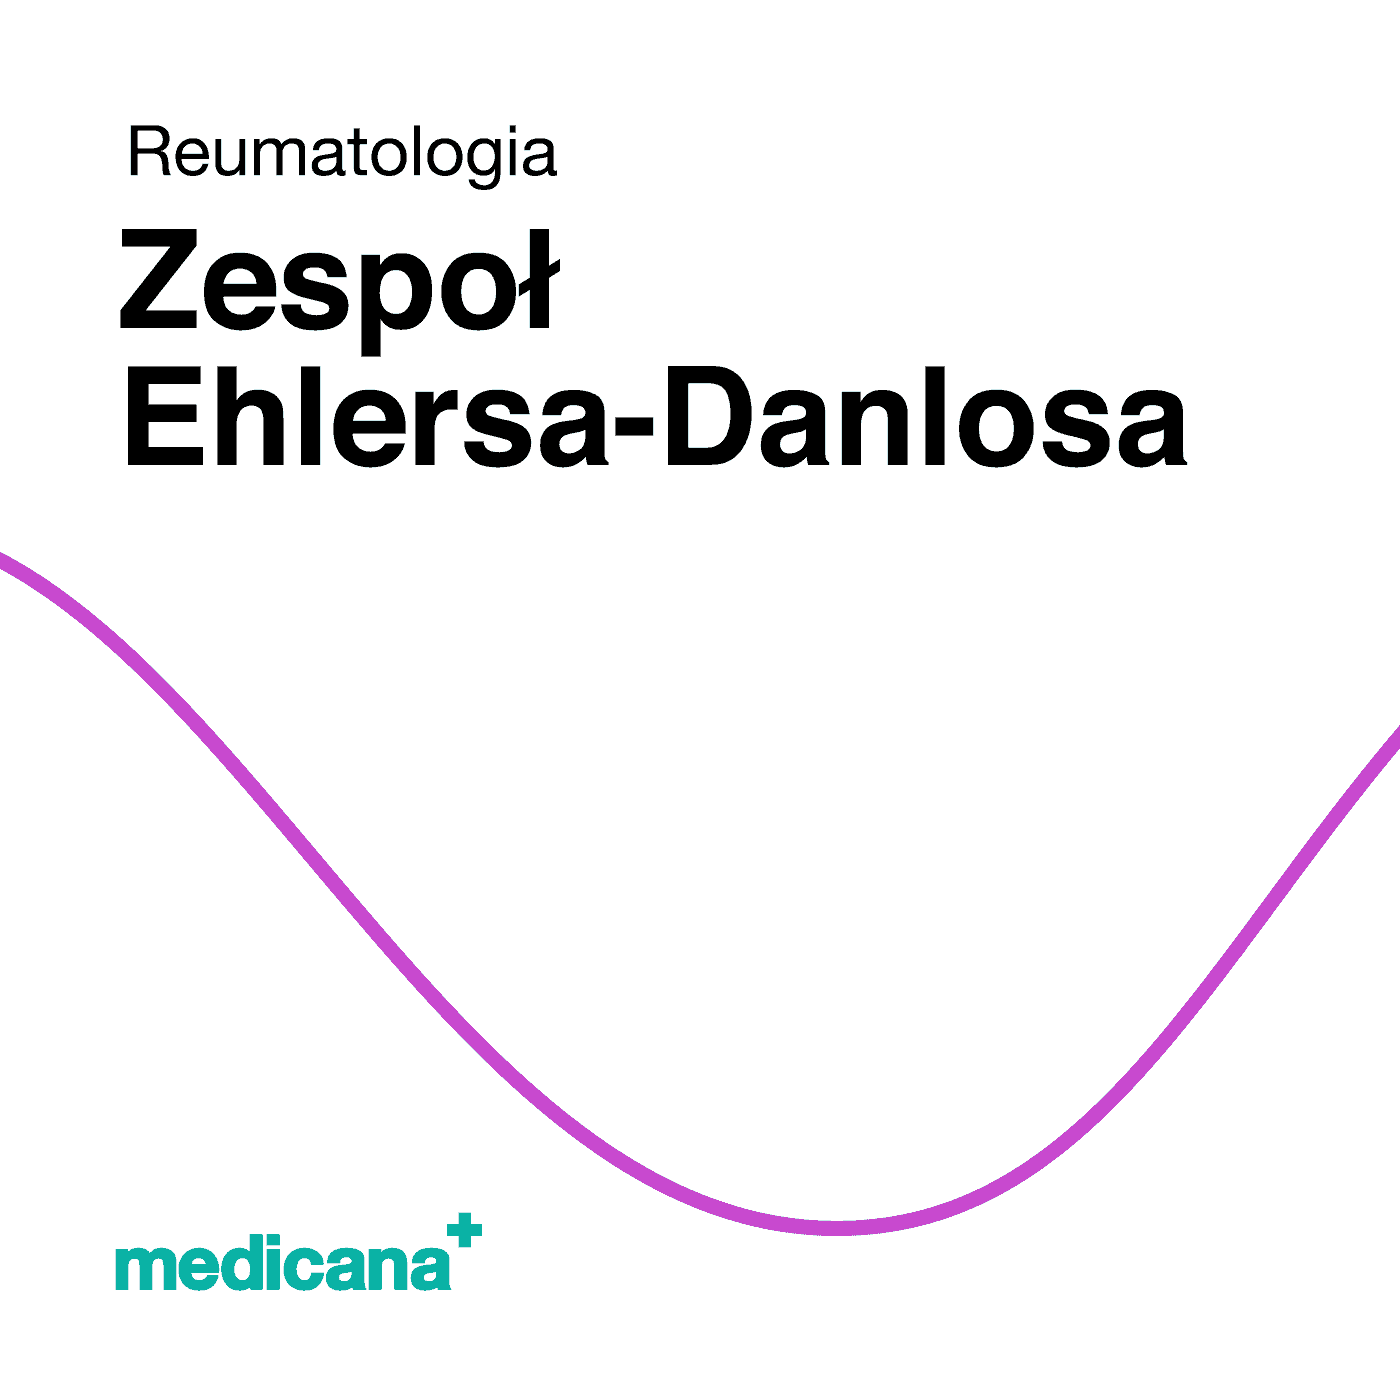 Grafika, białe tło fioletową kreską, czarnym napisem Reumatologia - Zespół Ehlersa - Danlosa i logo Medicana Centrum Terapii Medyczna Marihuana w lewym dolnym rogu.